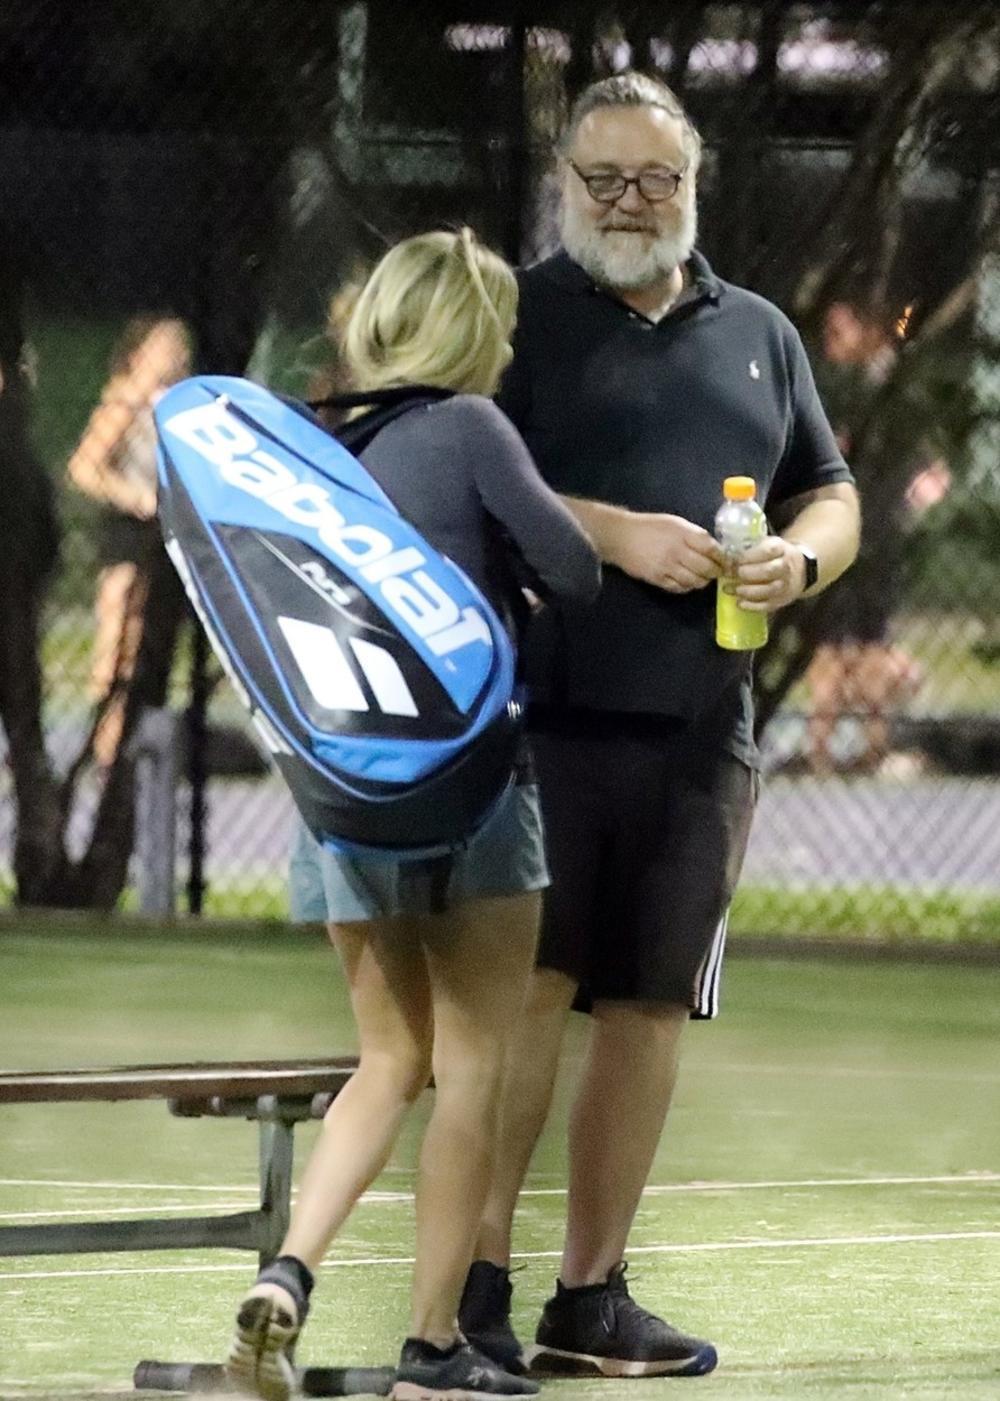 <p>Nekoliko se meseci šuškalo kako glumac Rasel Krou (56) ima novu devojku. Nagađanja su sada potvrdili popšto su ih uslikali na teniskom terenu kako se ljube.</p>